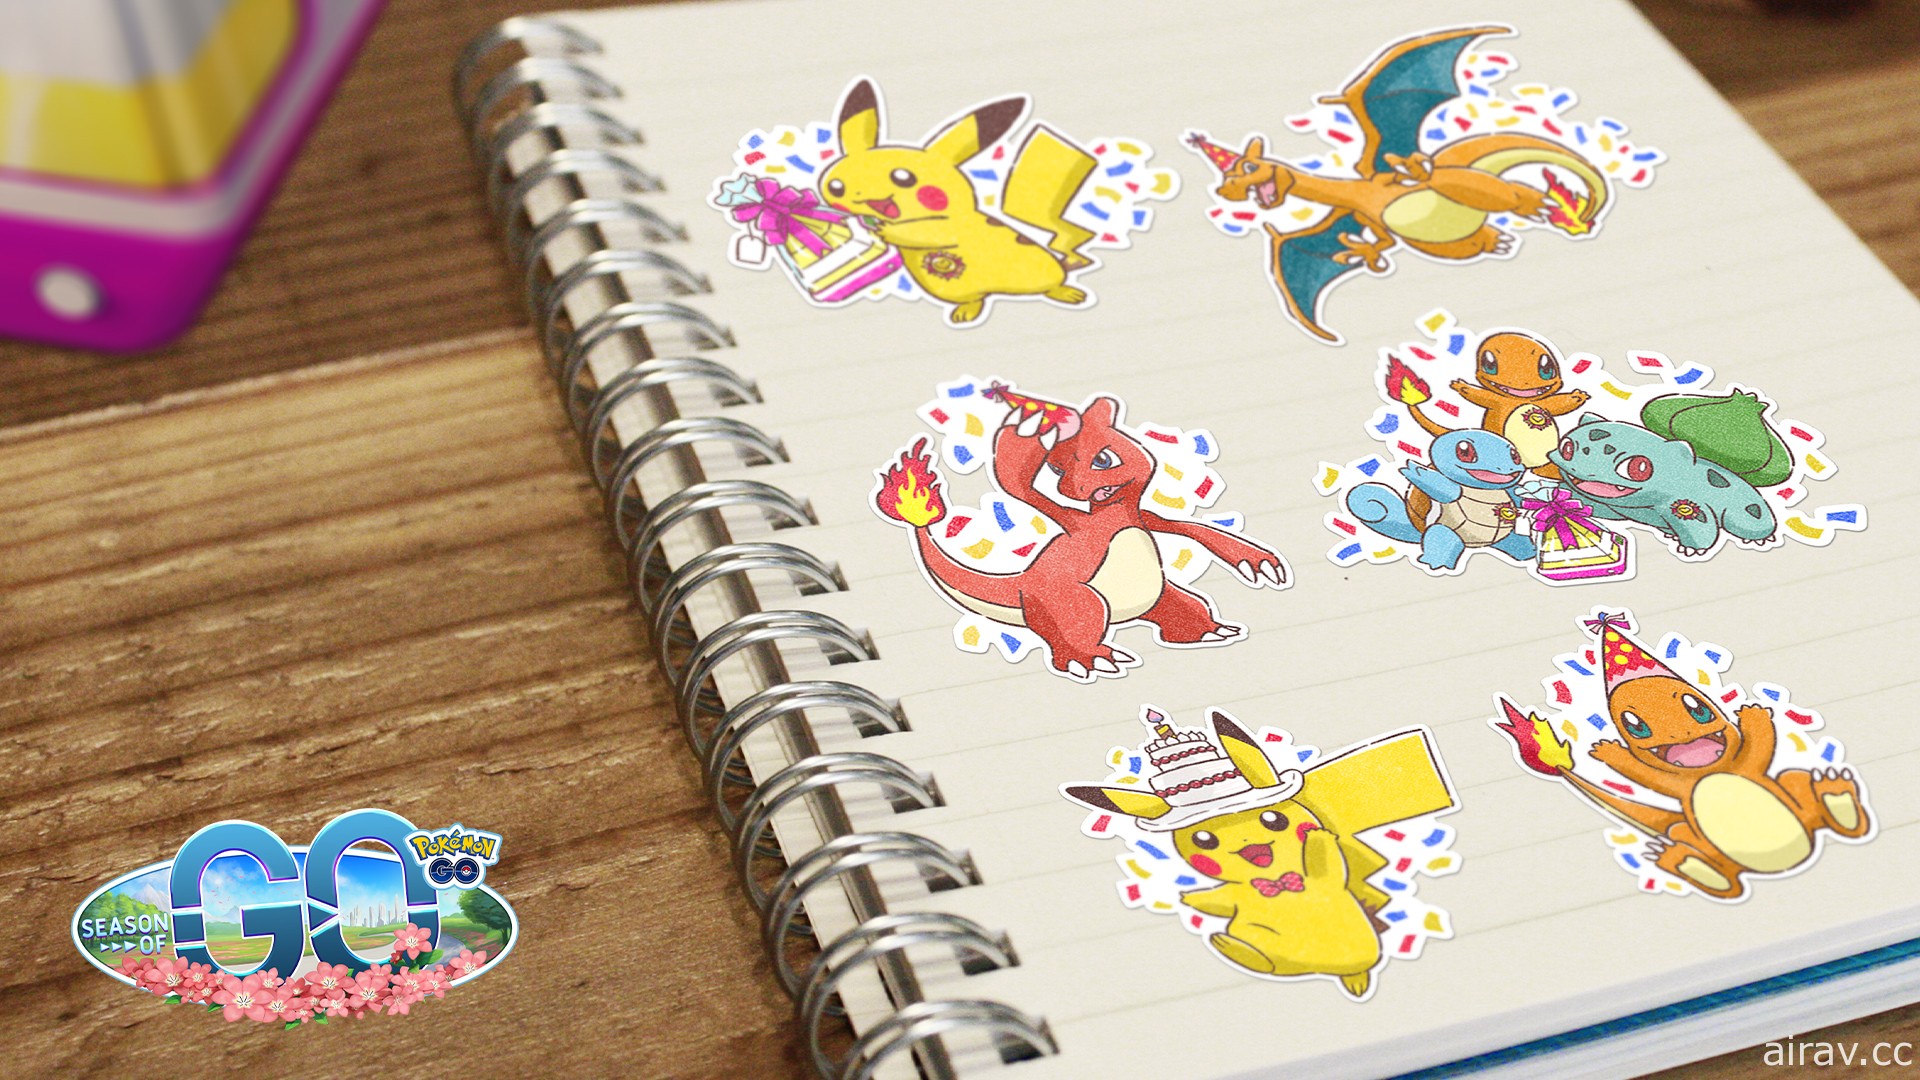 歡慶六周年！《Pokemon GO》將聚焦寶可夢圖鑑編號 006 噴火龍推出六大主題慶祝活動